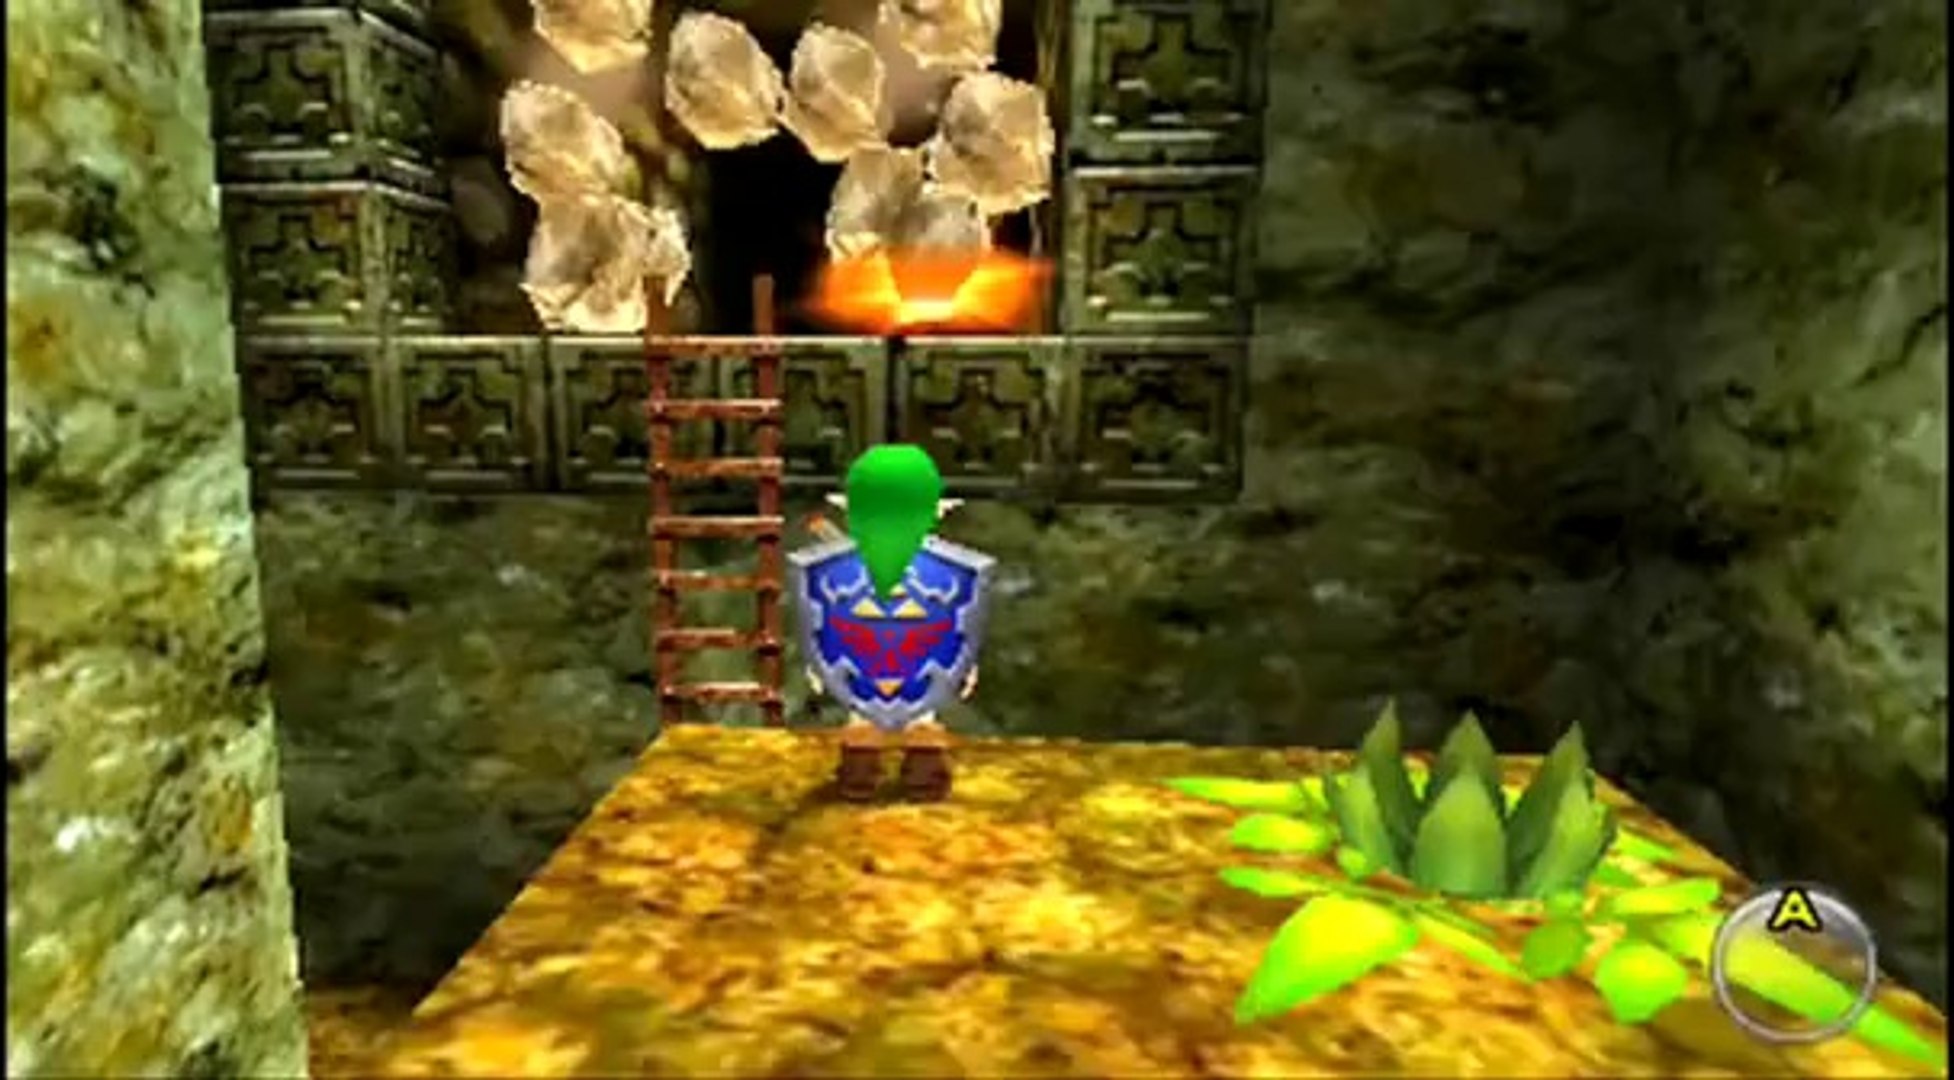 Nintendo 3DS - The Legend of Zelda: Ocarina of Time 3D Reviews Trailer 